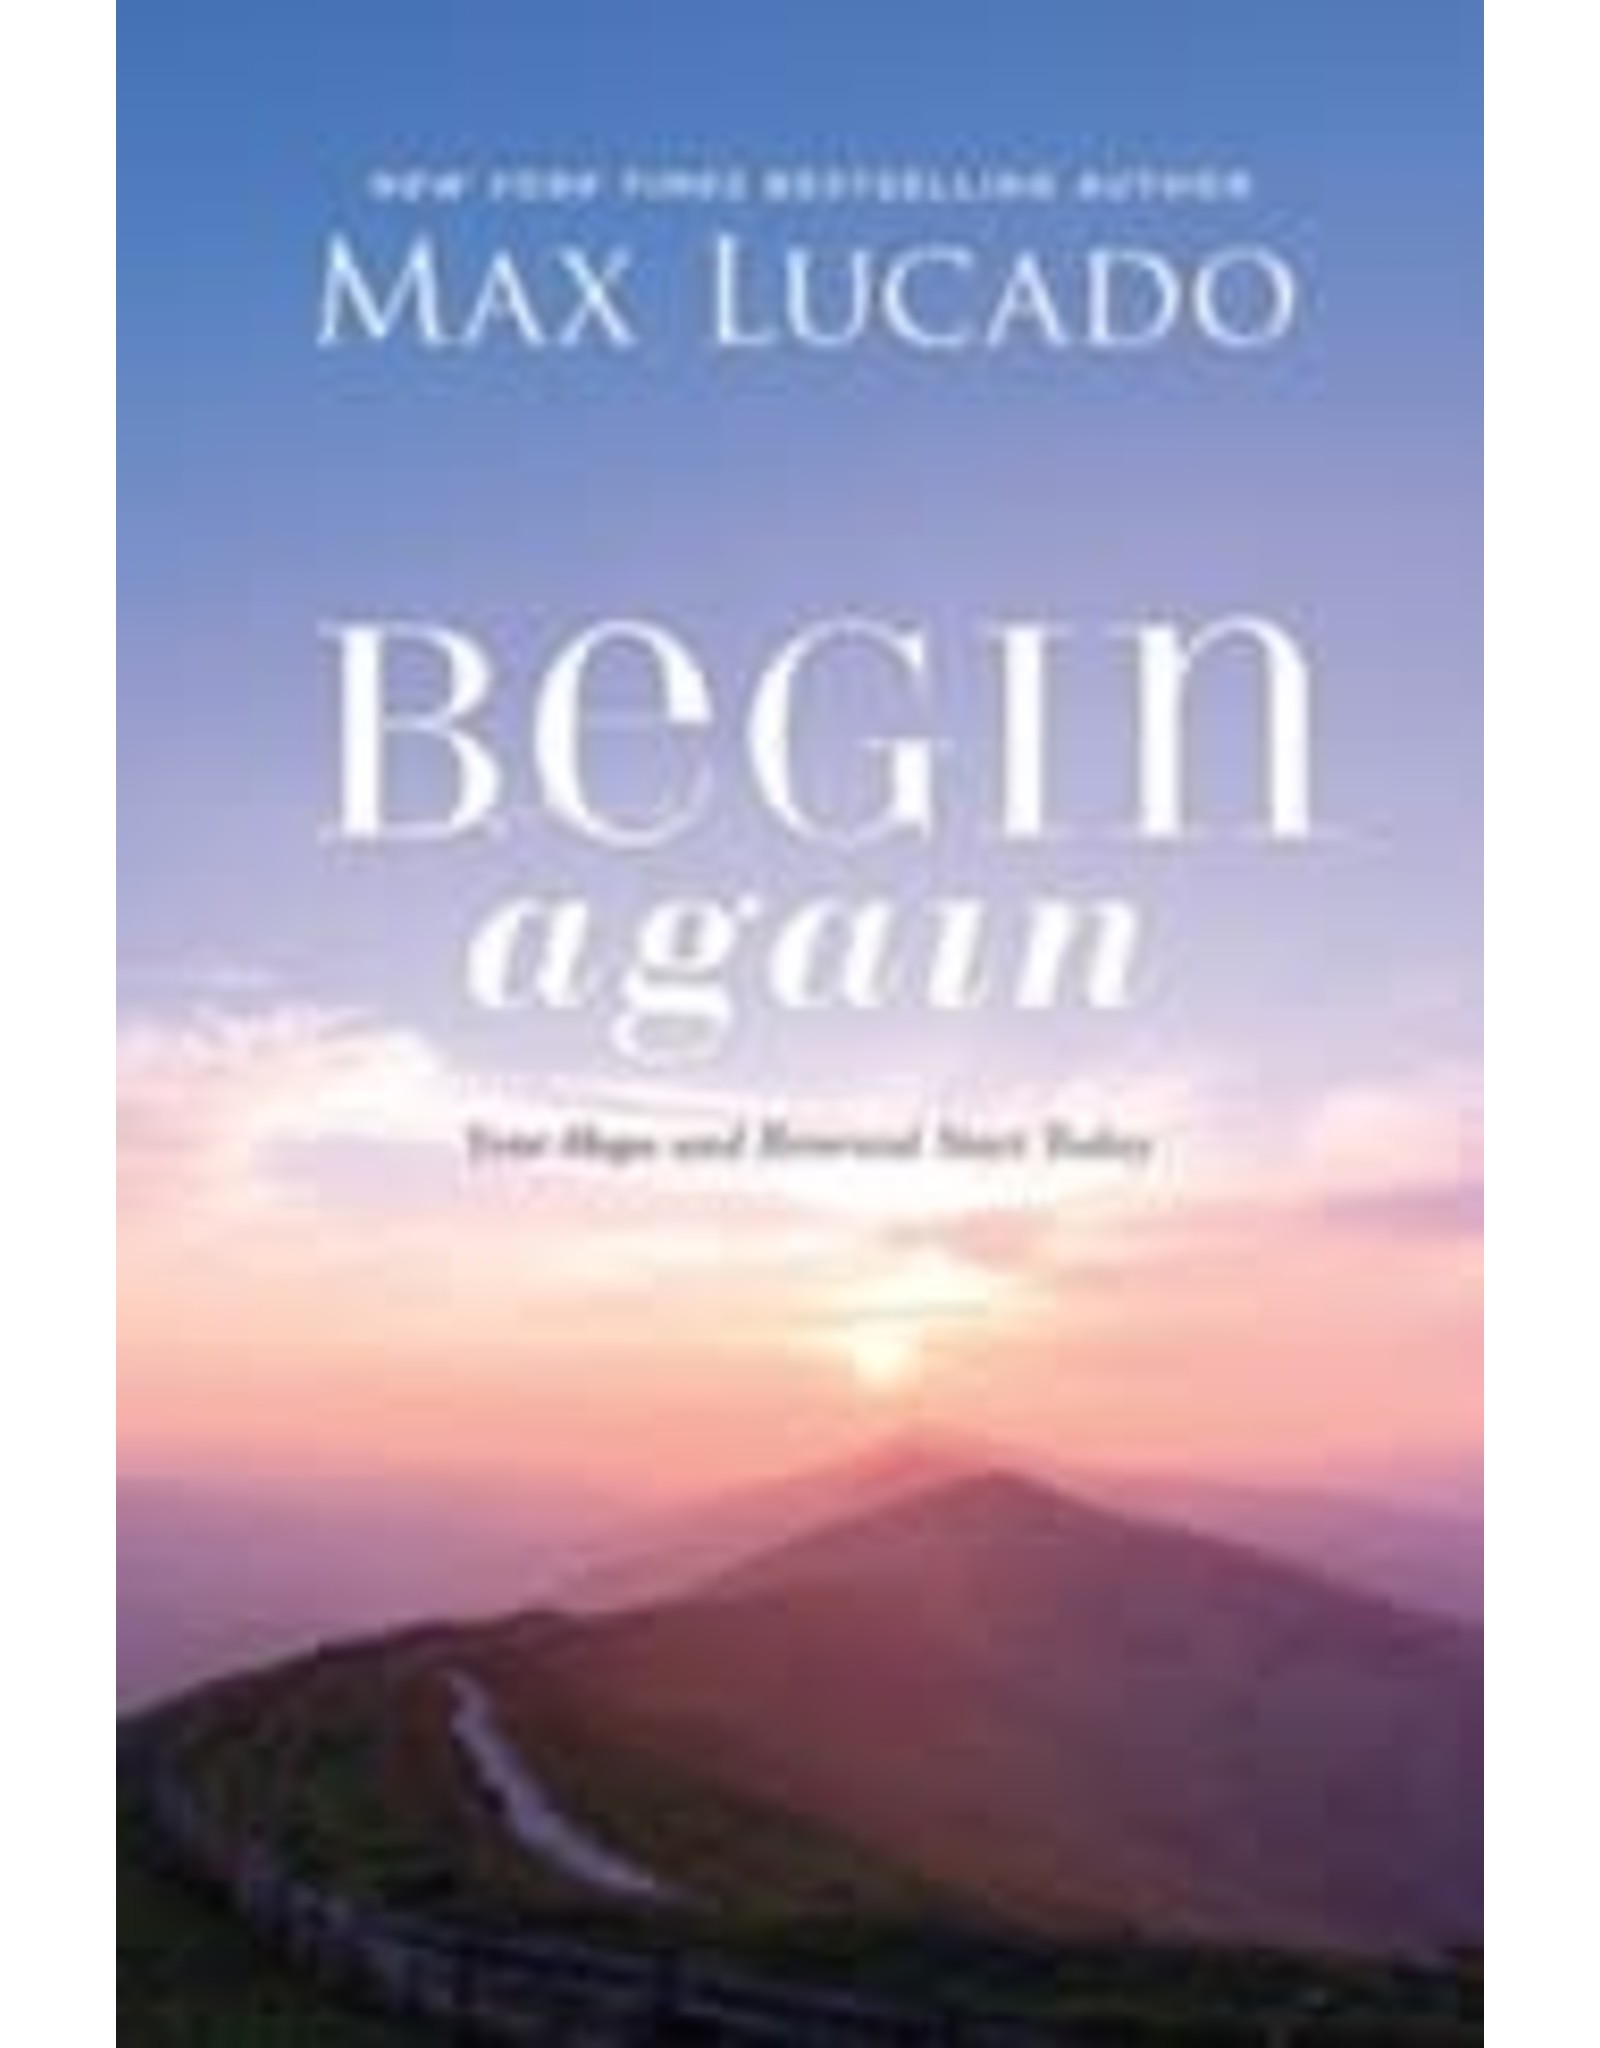 Max Lucado Max Lucado - Begin Again